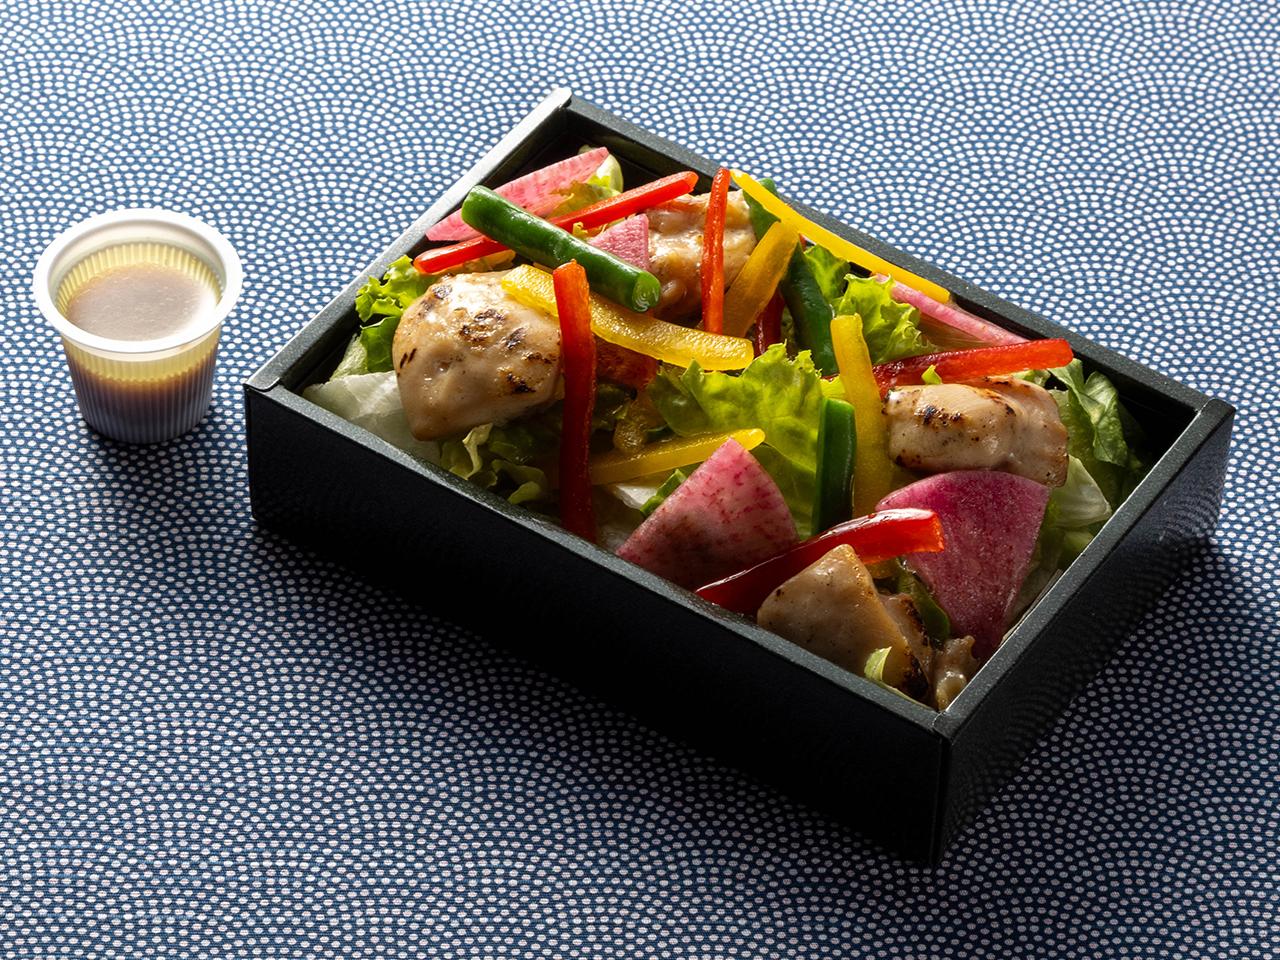 機内食、チキンと紅芯大根のサラダバルサミコドレッシングの写真です。